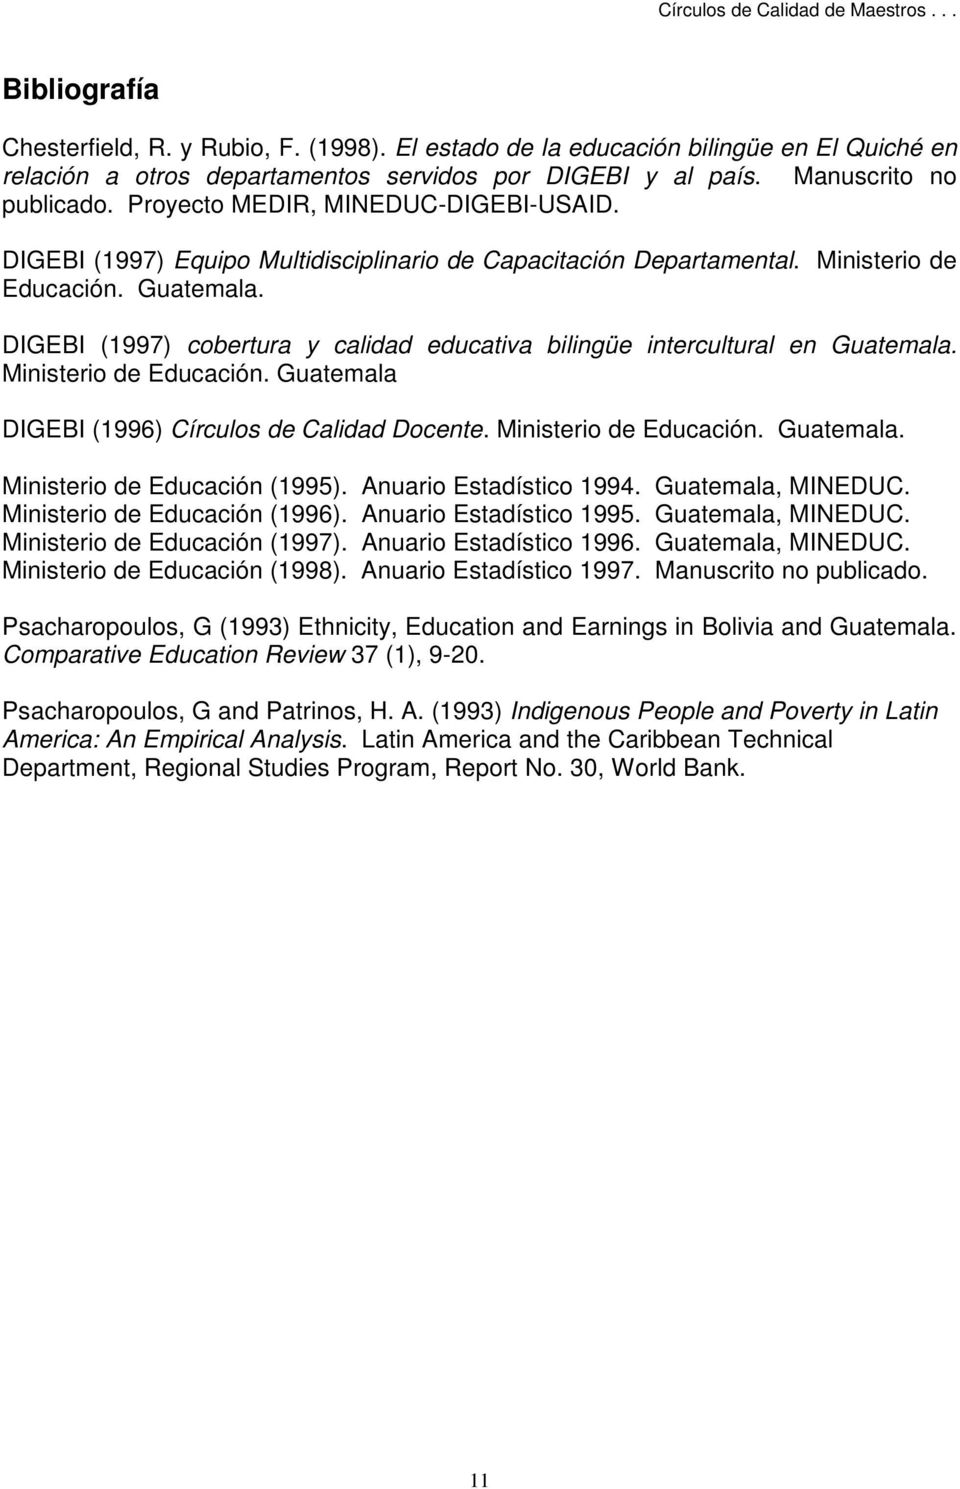 DIGEBI (1997) cobertura y calidad educativa bilingüe intercultural en Guatemala. Ministerio de Educación. Guatemala DIGEBI (1996) Círculos de Calidad Docente. Ministerio de Educación. Guatemala. Ministerio de Educación (1995).